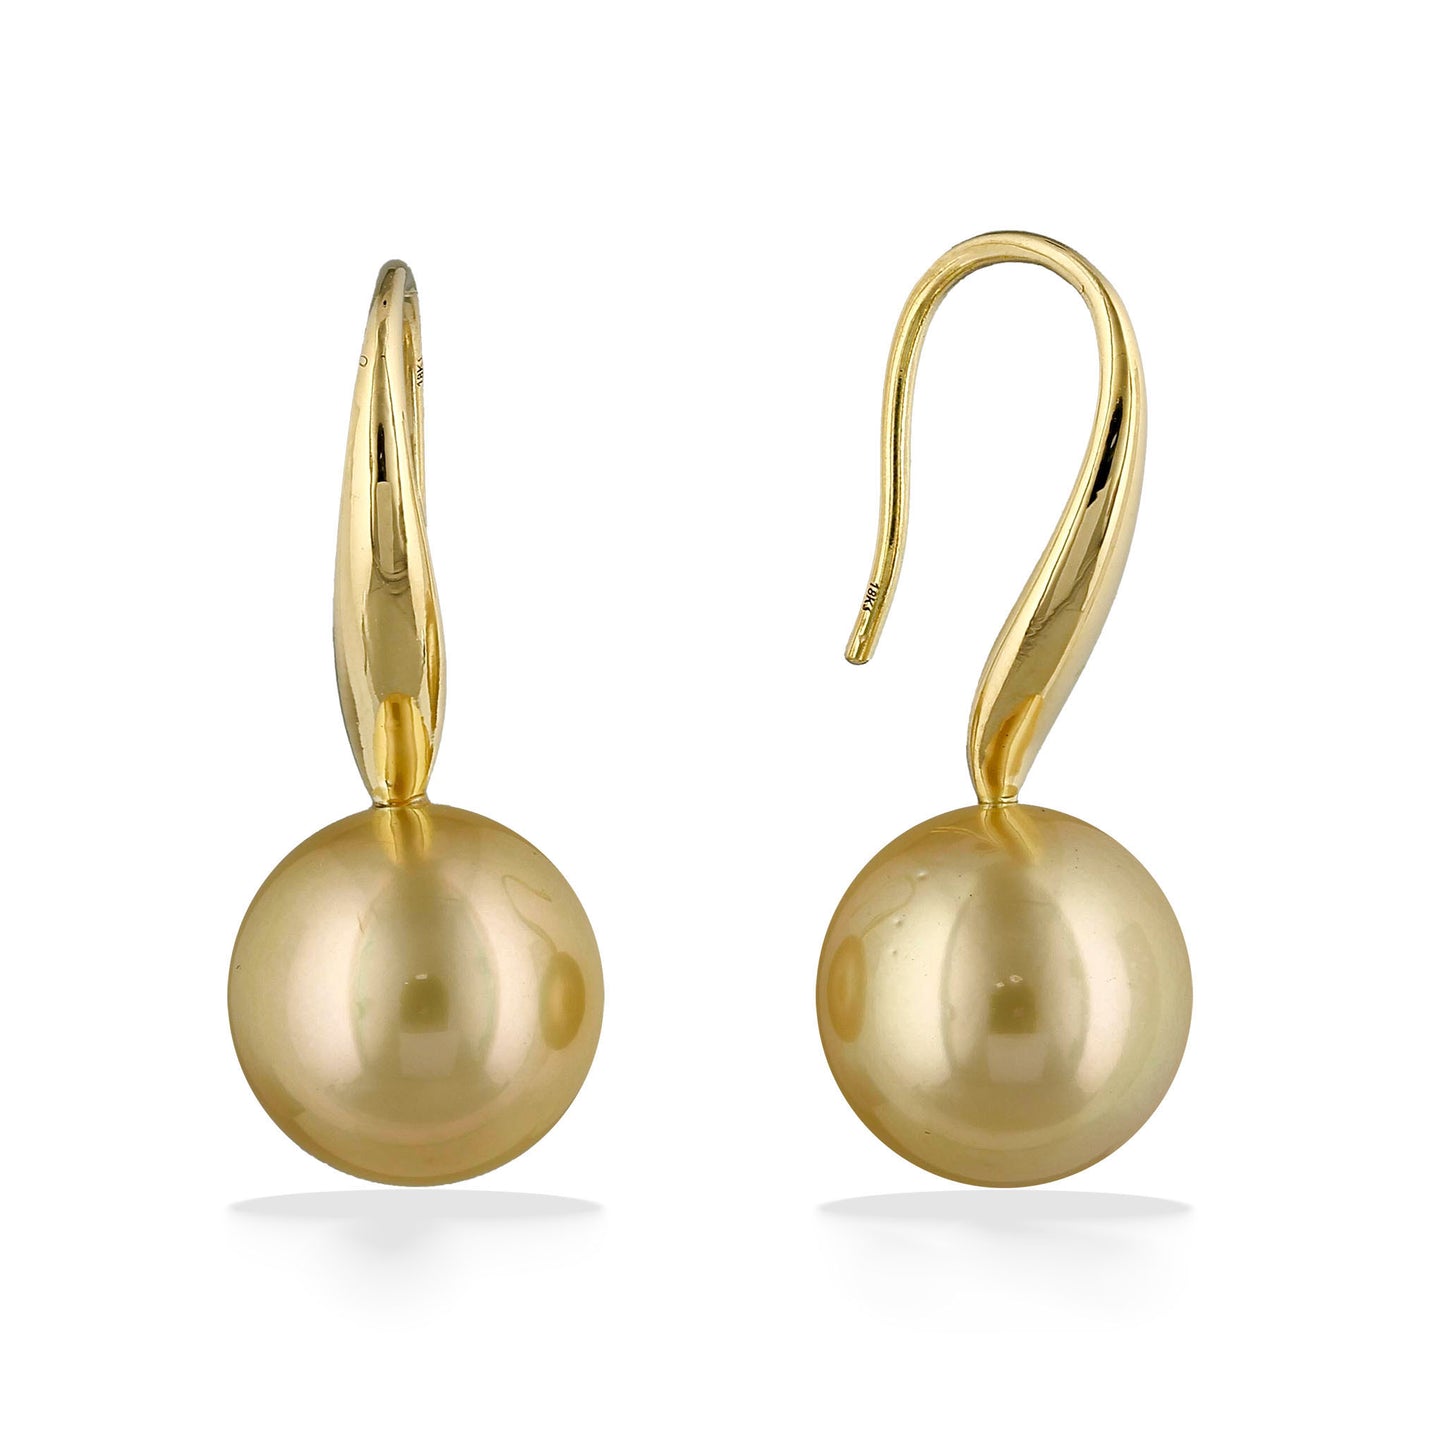 44848 - 18K Yellow Gold - Golden South Sea Pearl Hook Earrings